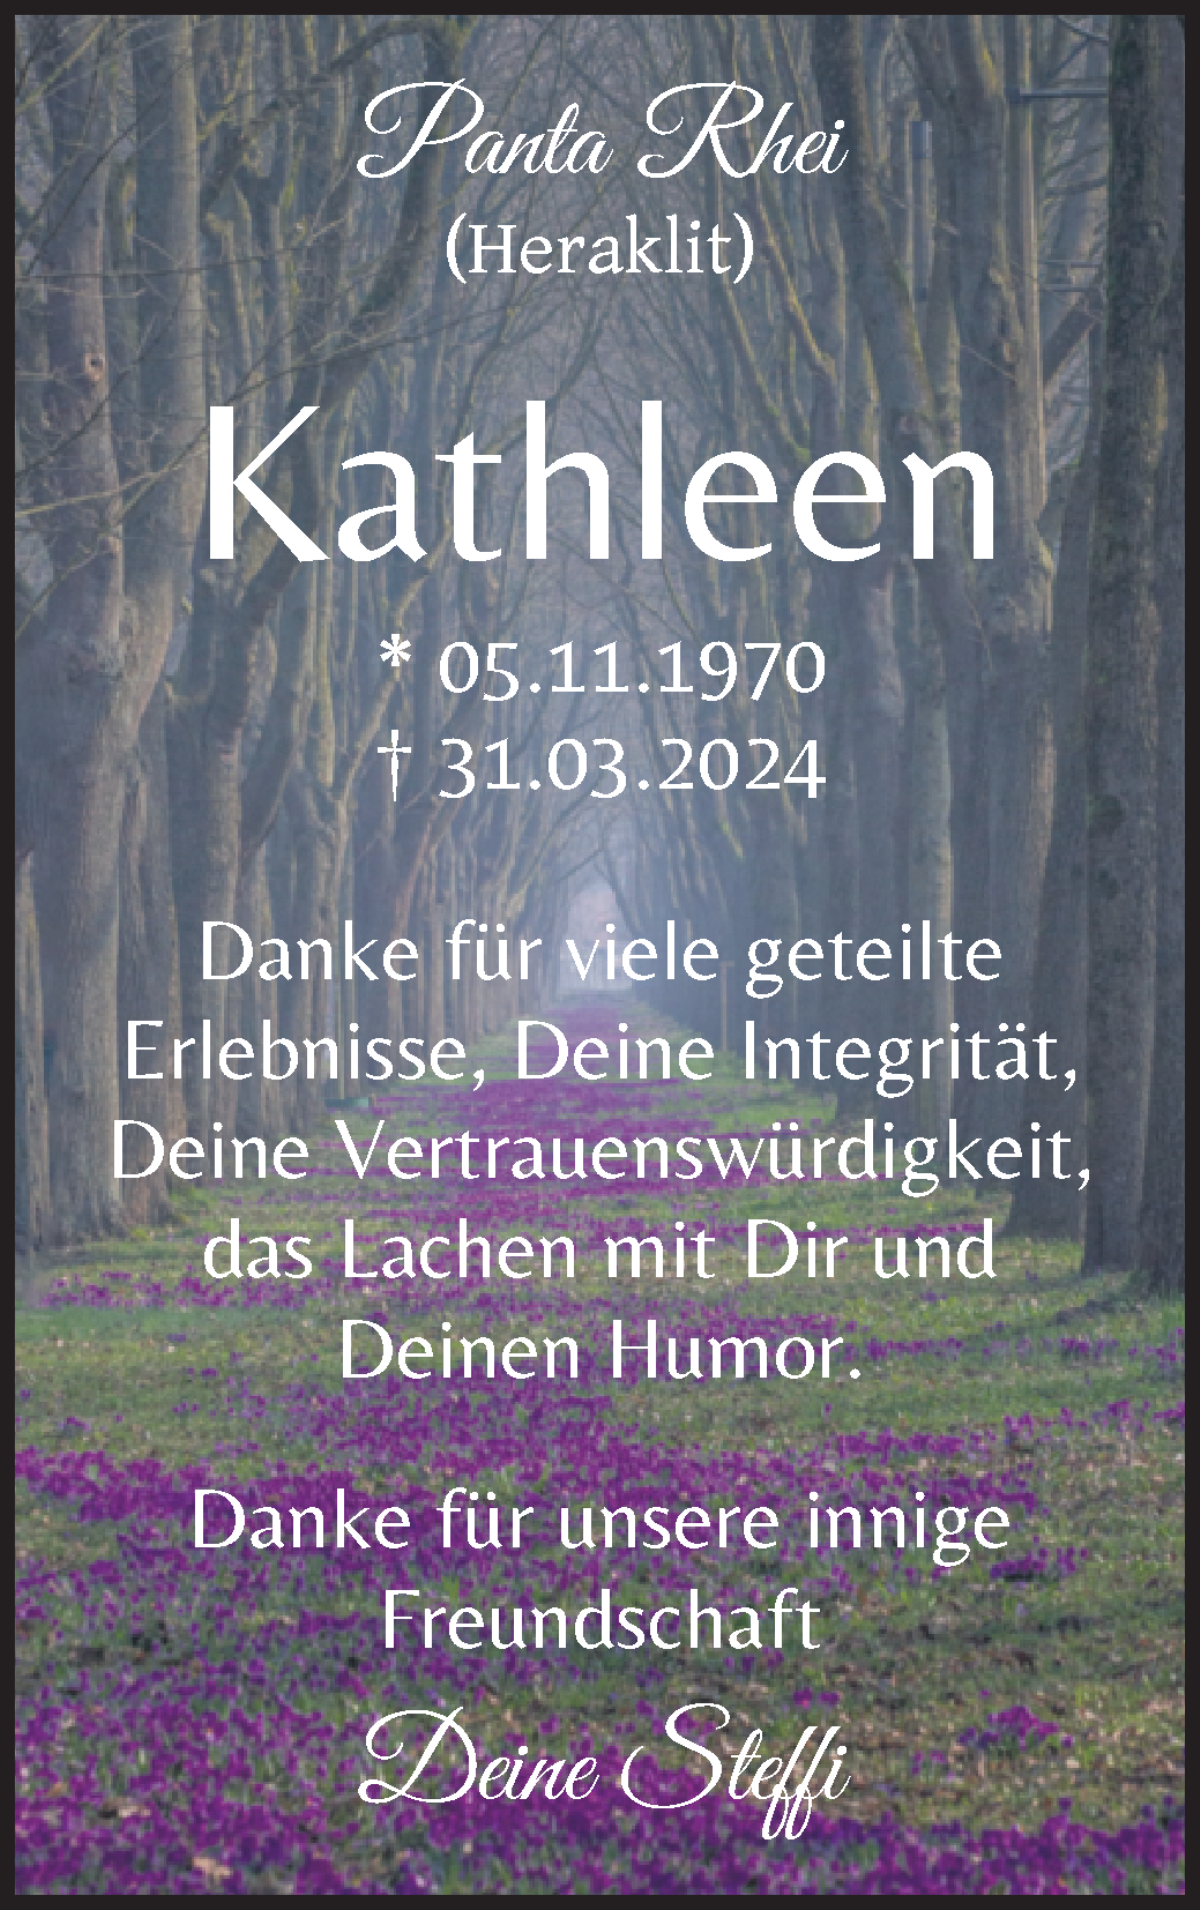  Traueranzeige für Kathleen Büssenschütt vom 06.04.2024 aus WESER-KURIER